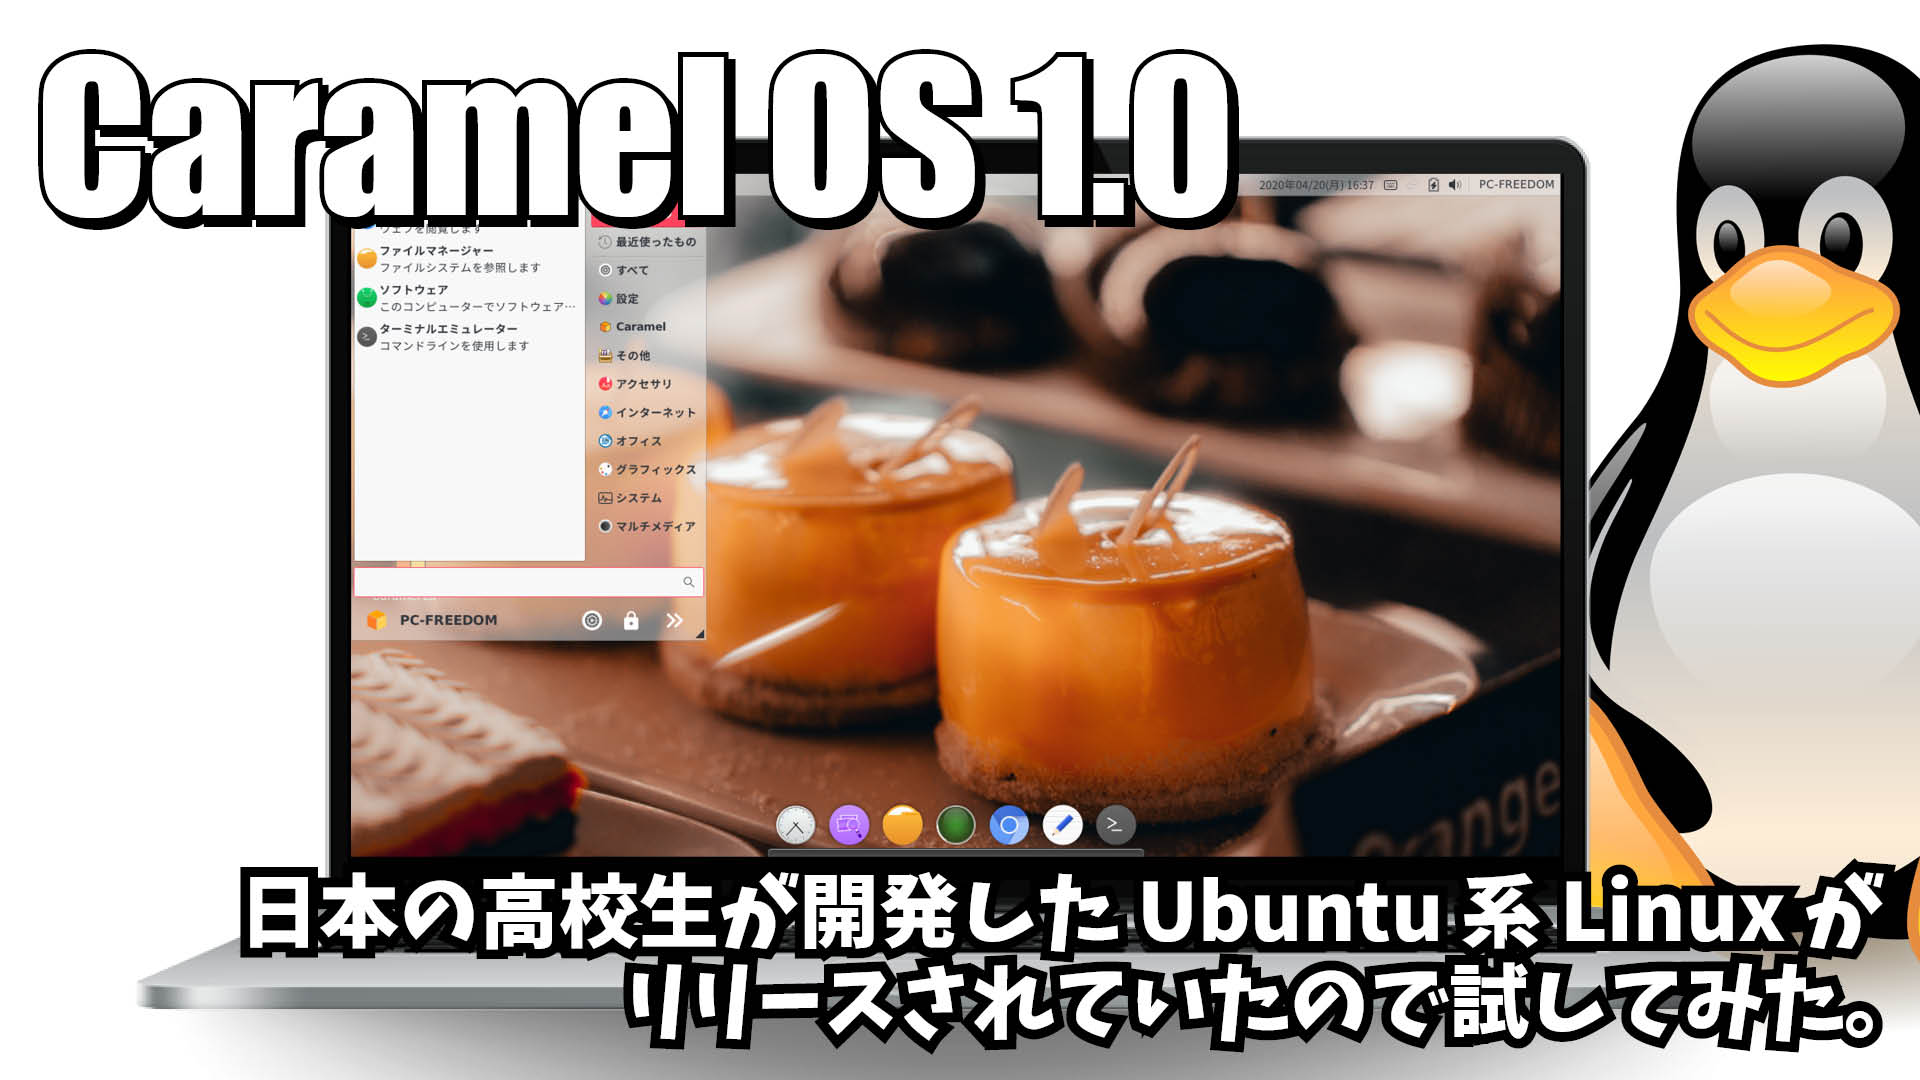 Caramel OS 1.0: 日本の高校生が開発した Ubuntu 系 Linux がリリースされていたので試してみた。